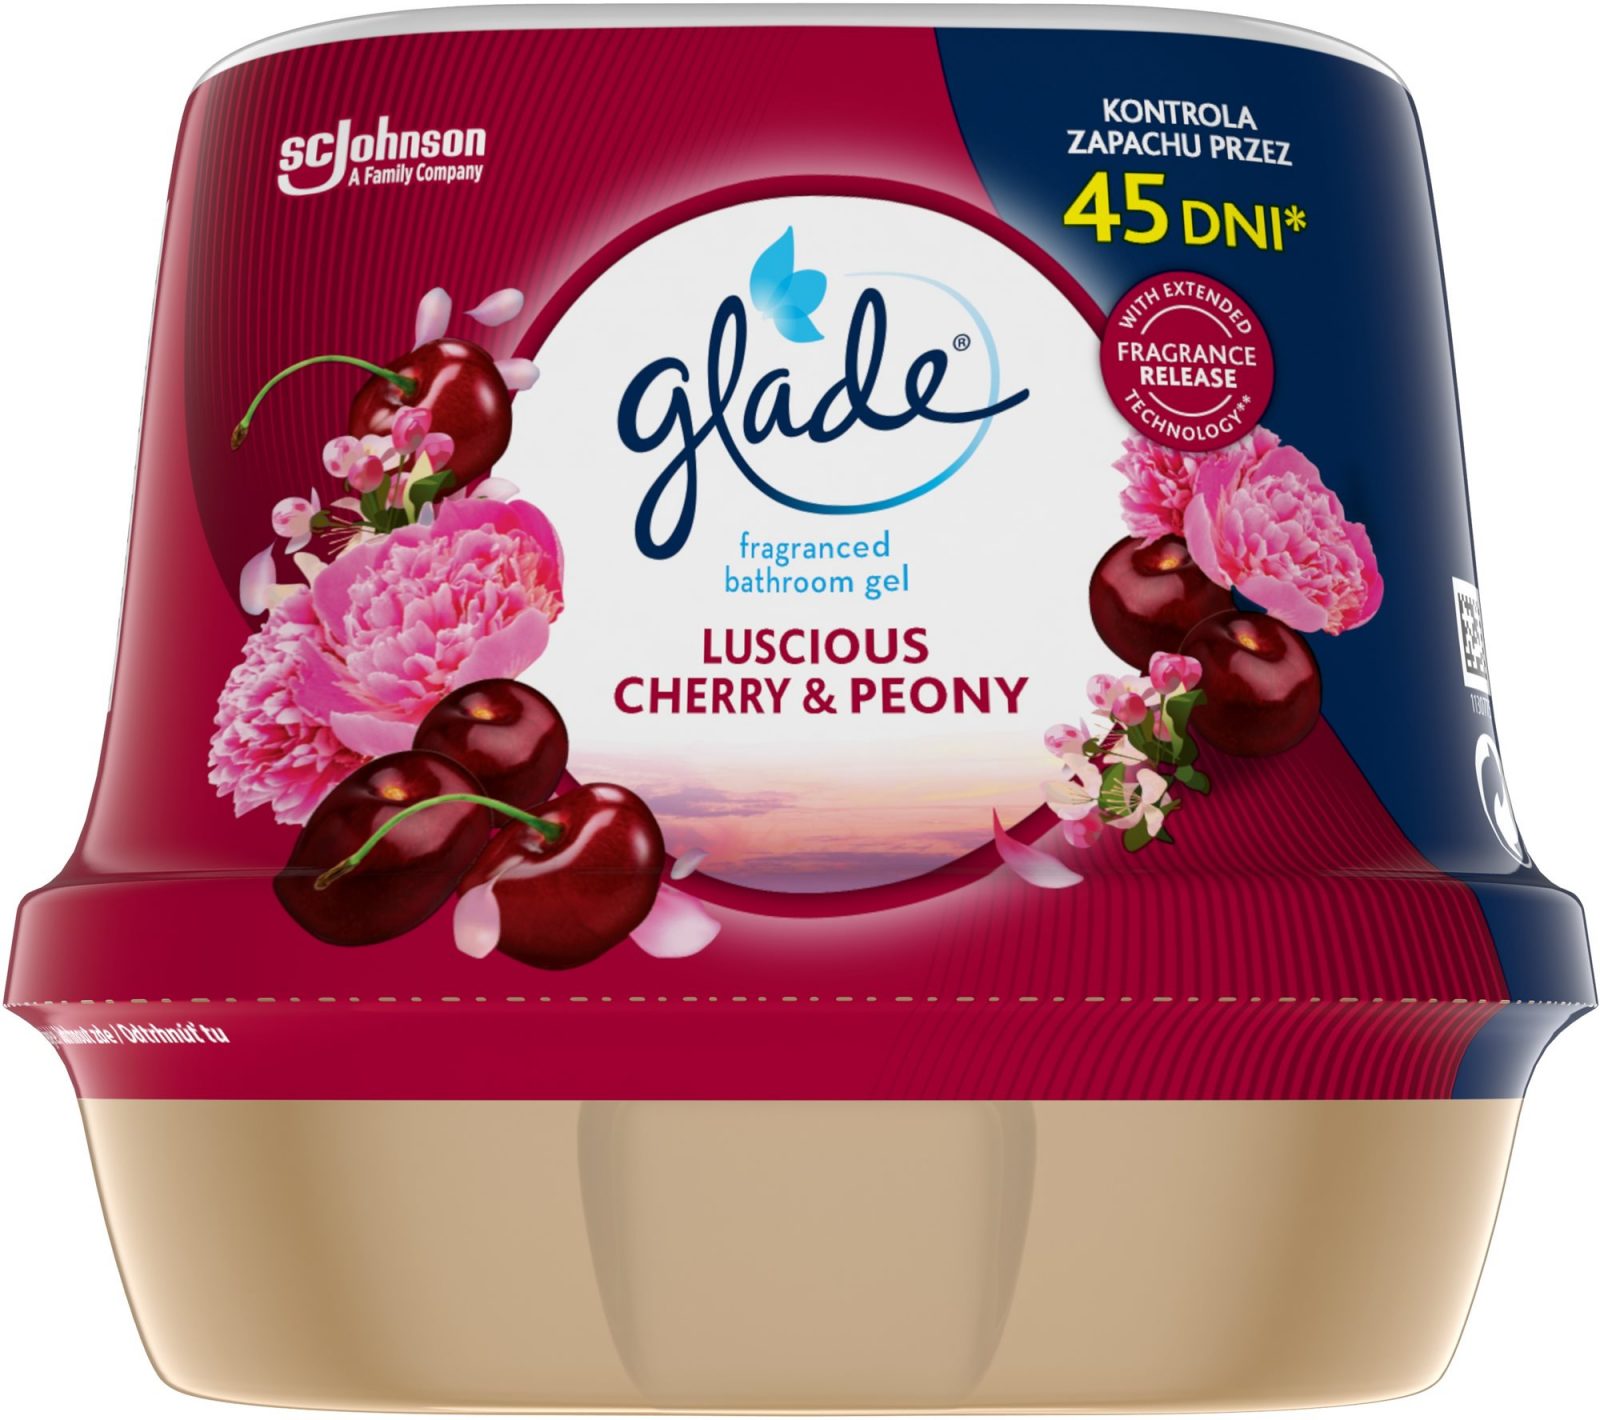 Légfrissítő GLADE Fürdőszobai légfrissítő zselé - Luscious Cherry & Peony 180g